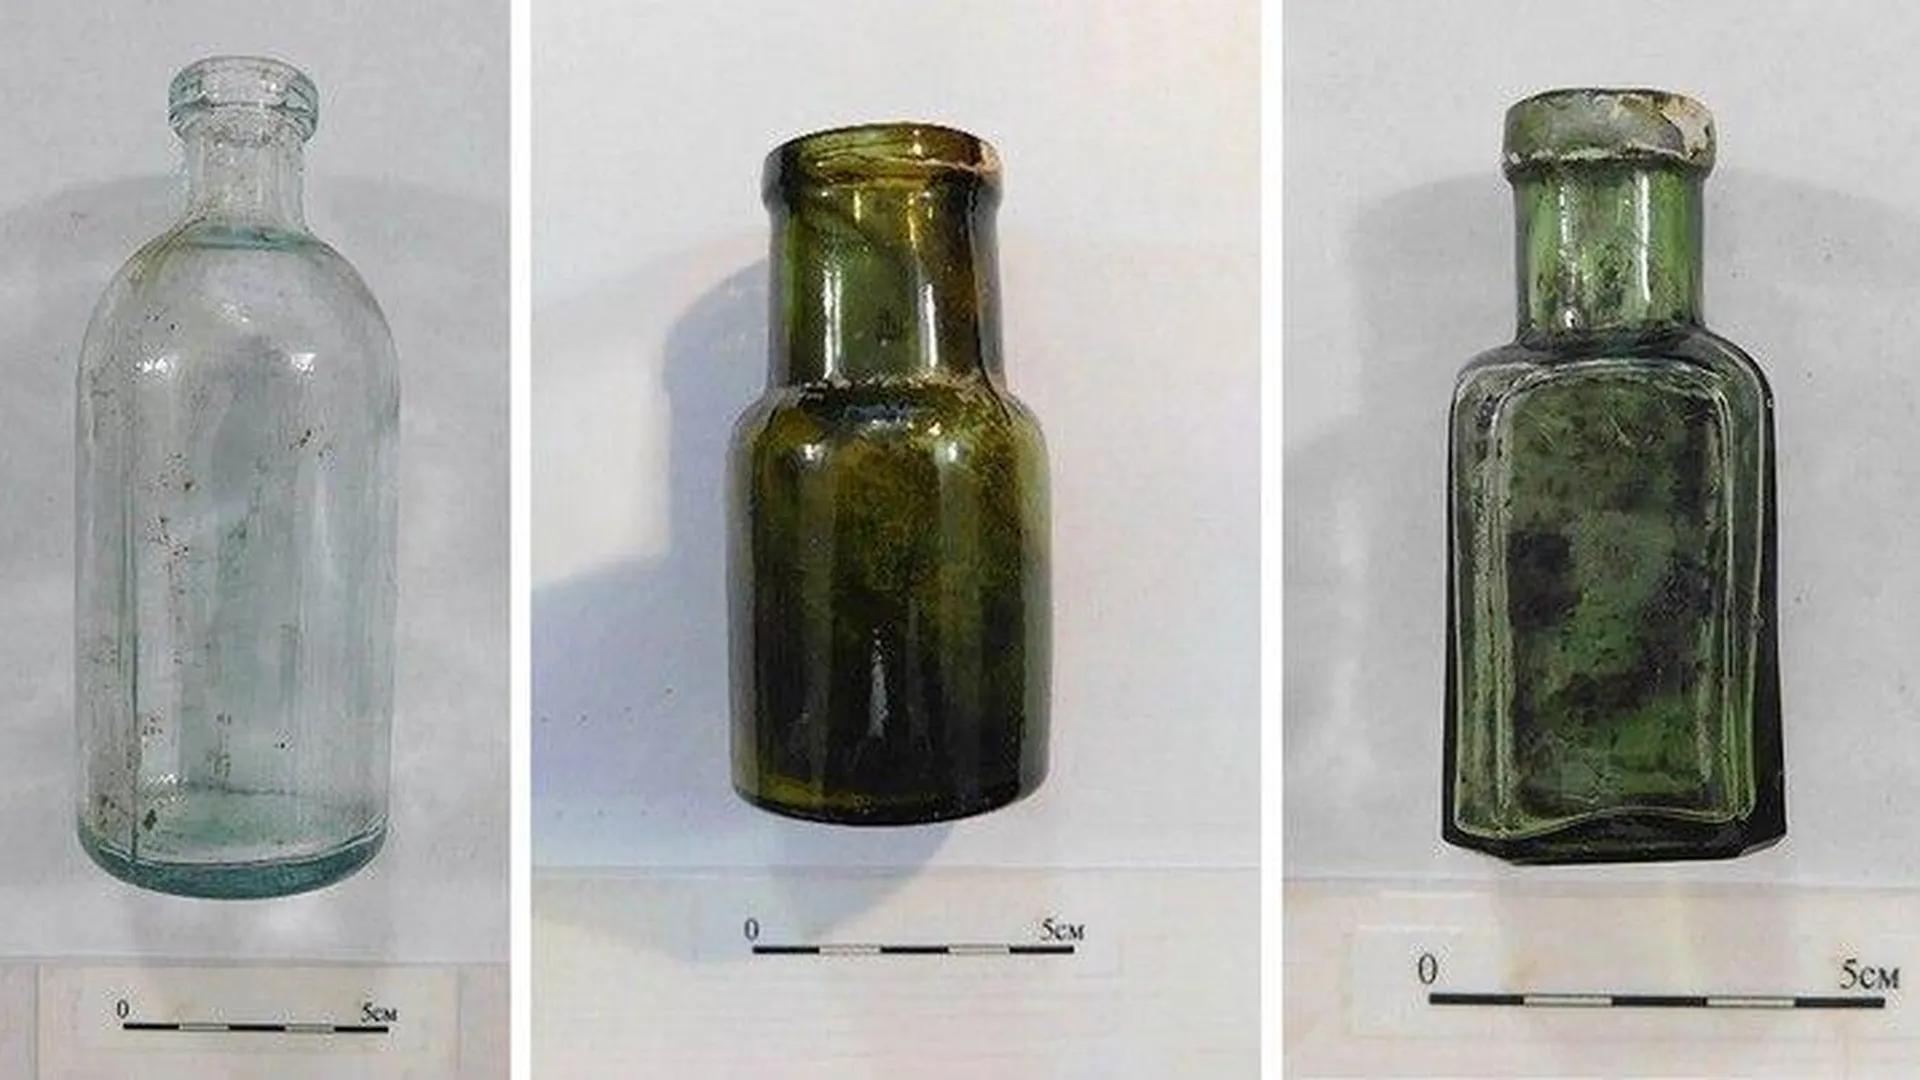 Археологи нашли старинную посуду и аптечные флаконы на юге Москвы